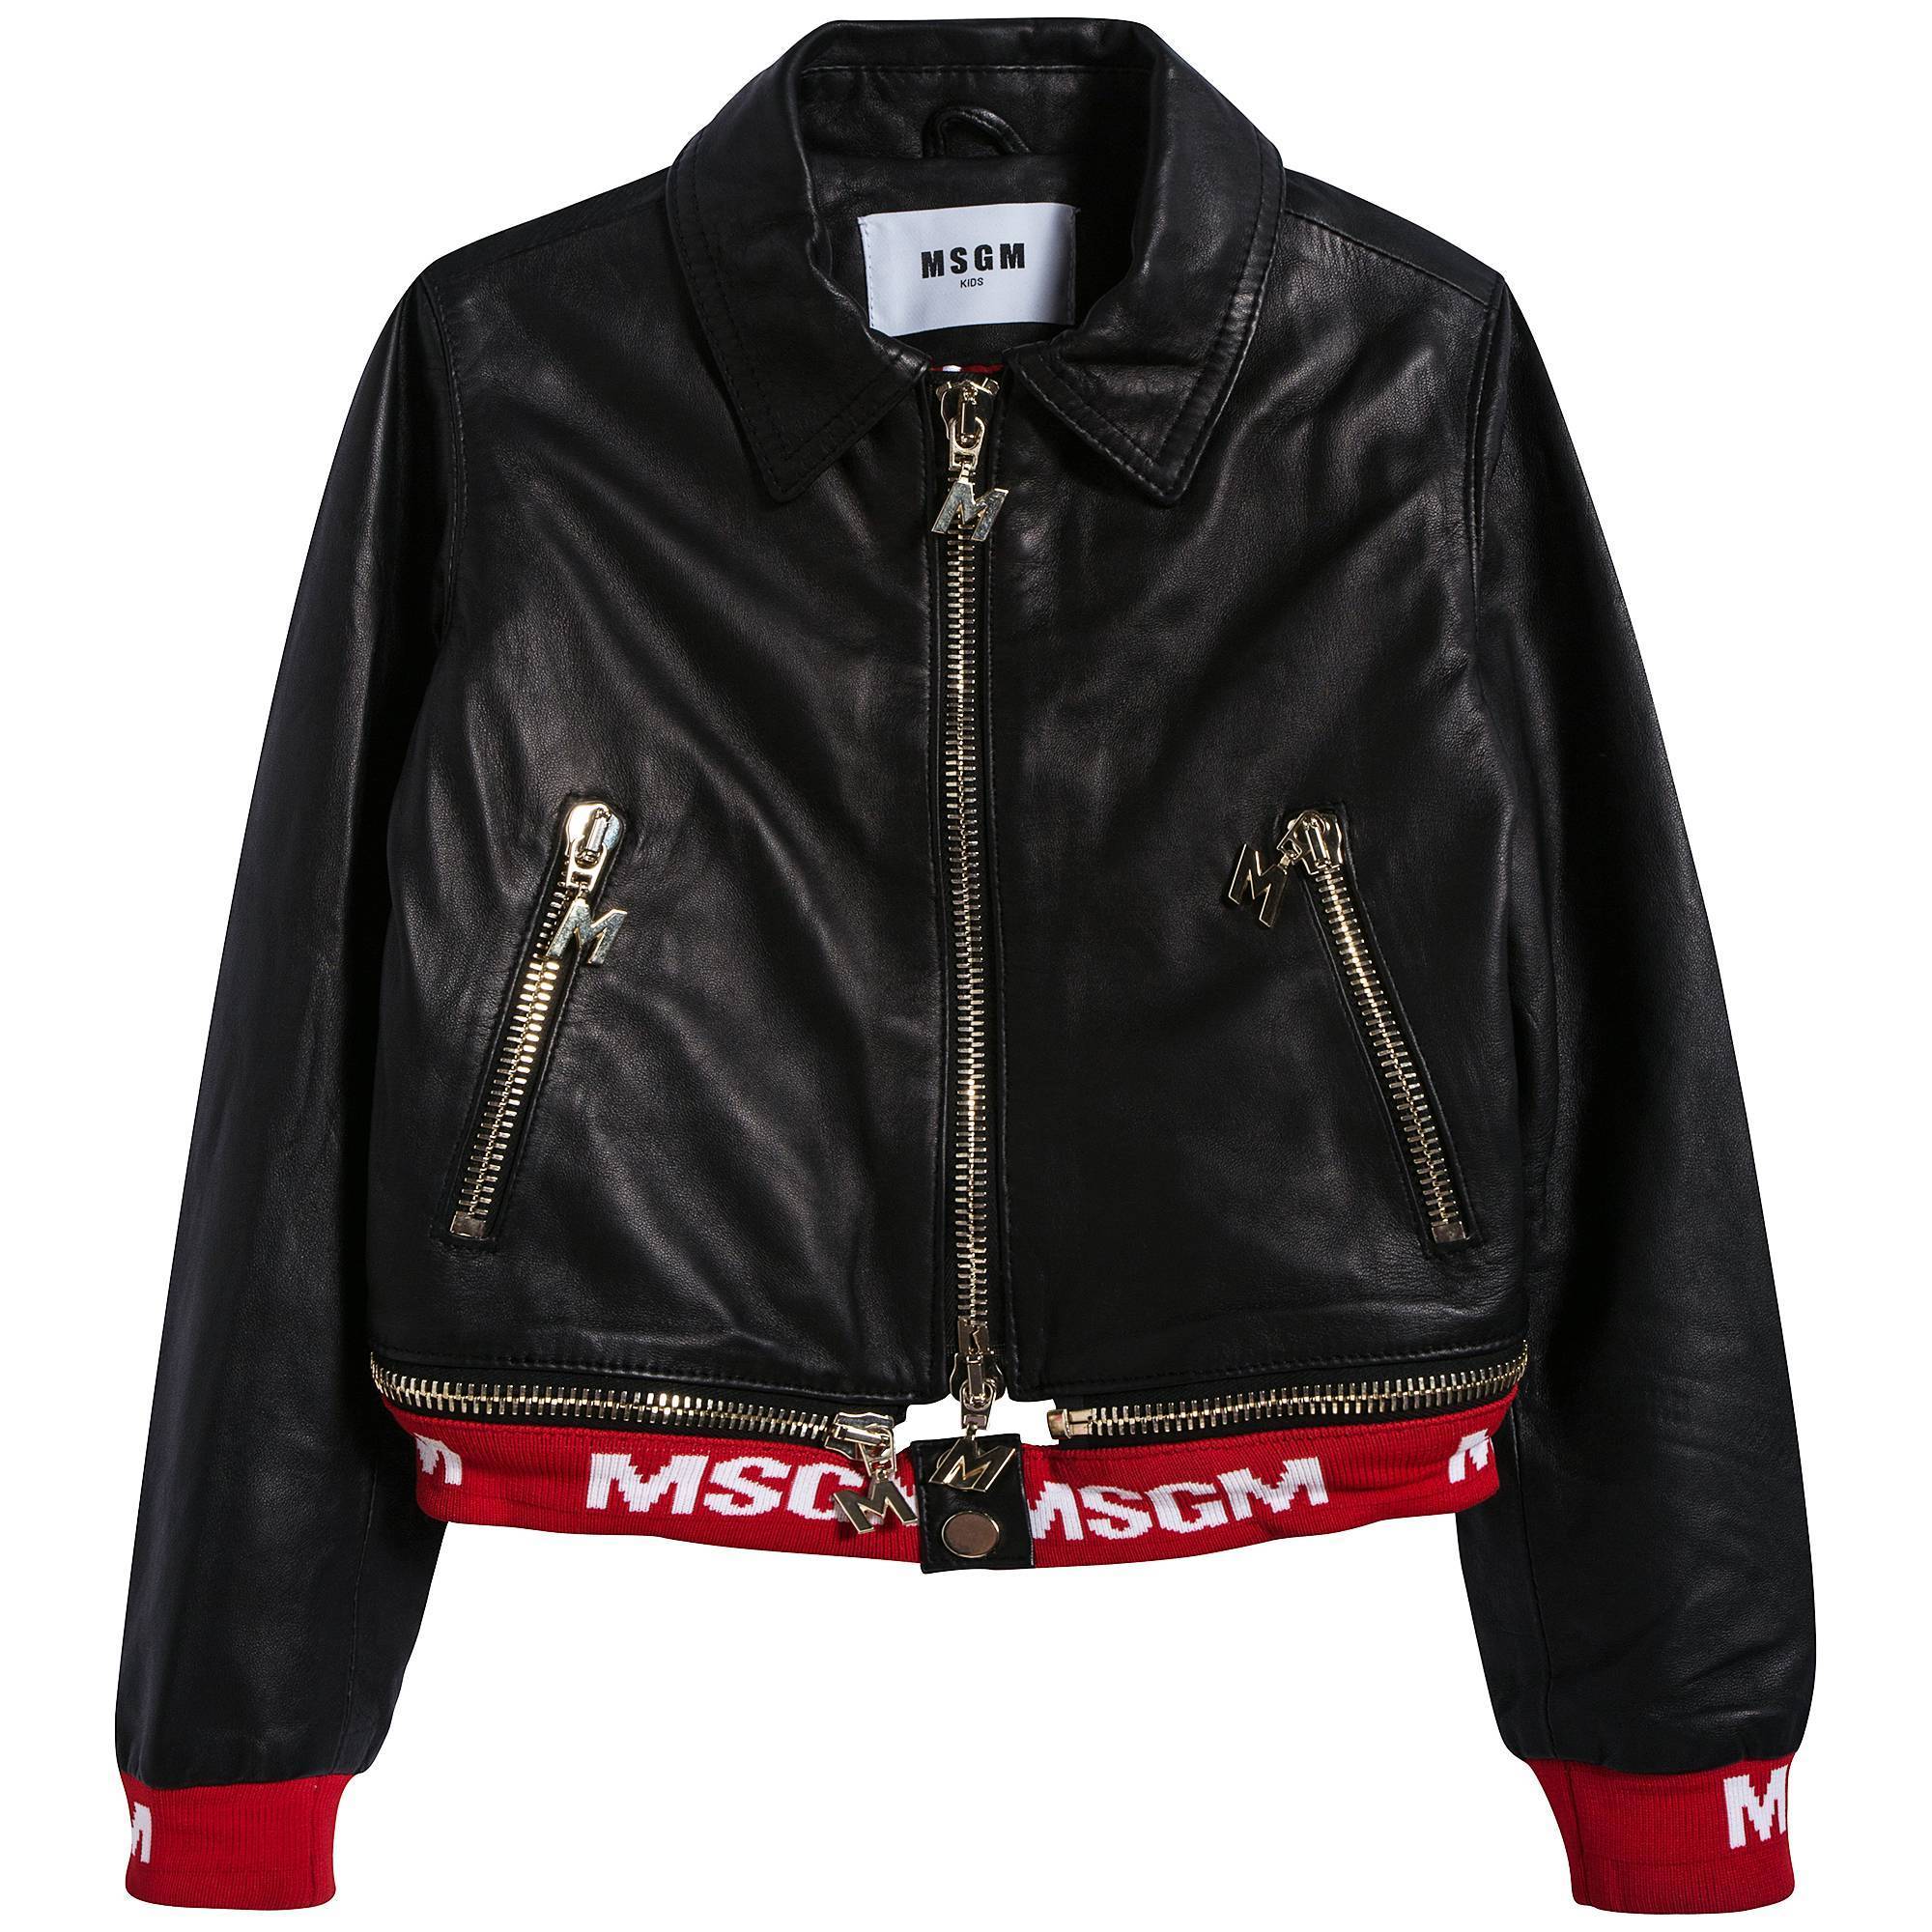 Girls Black Leather Jacket